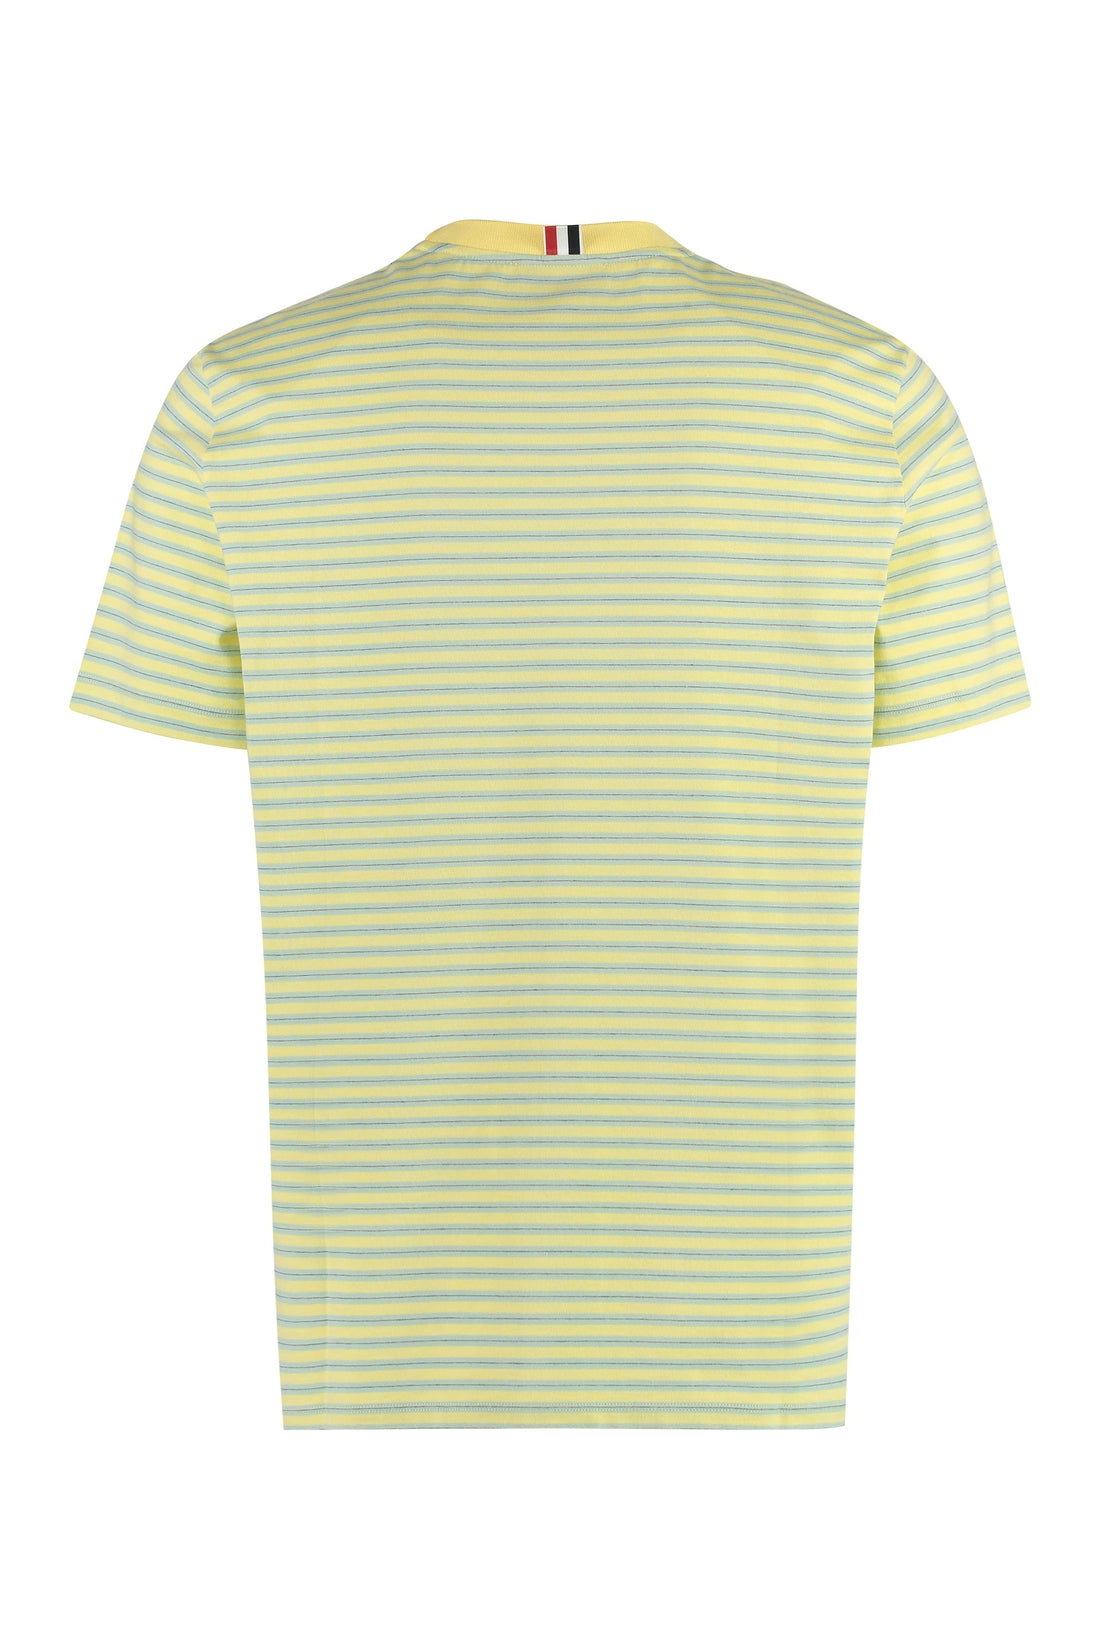 Thom Browne-OUTLET-SALE-Striped cotton T-shirt-ARCHIVIST